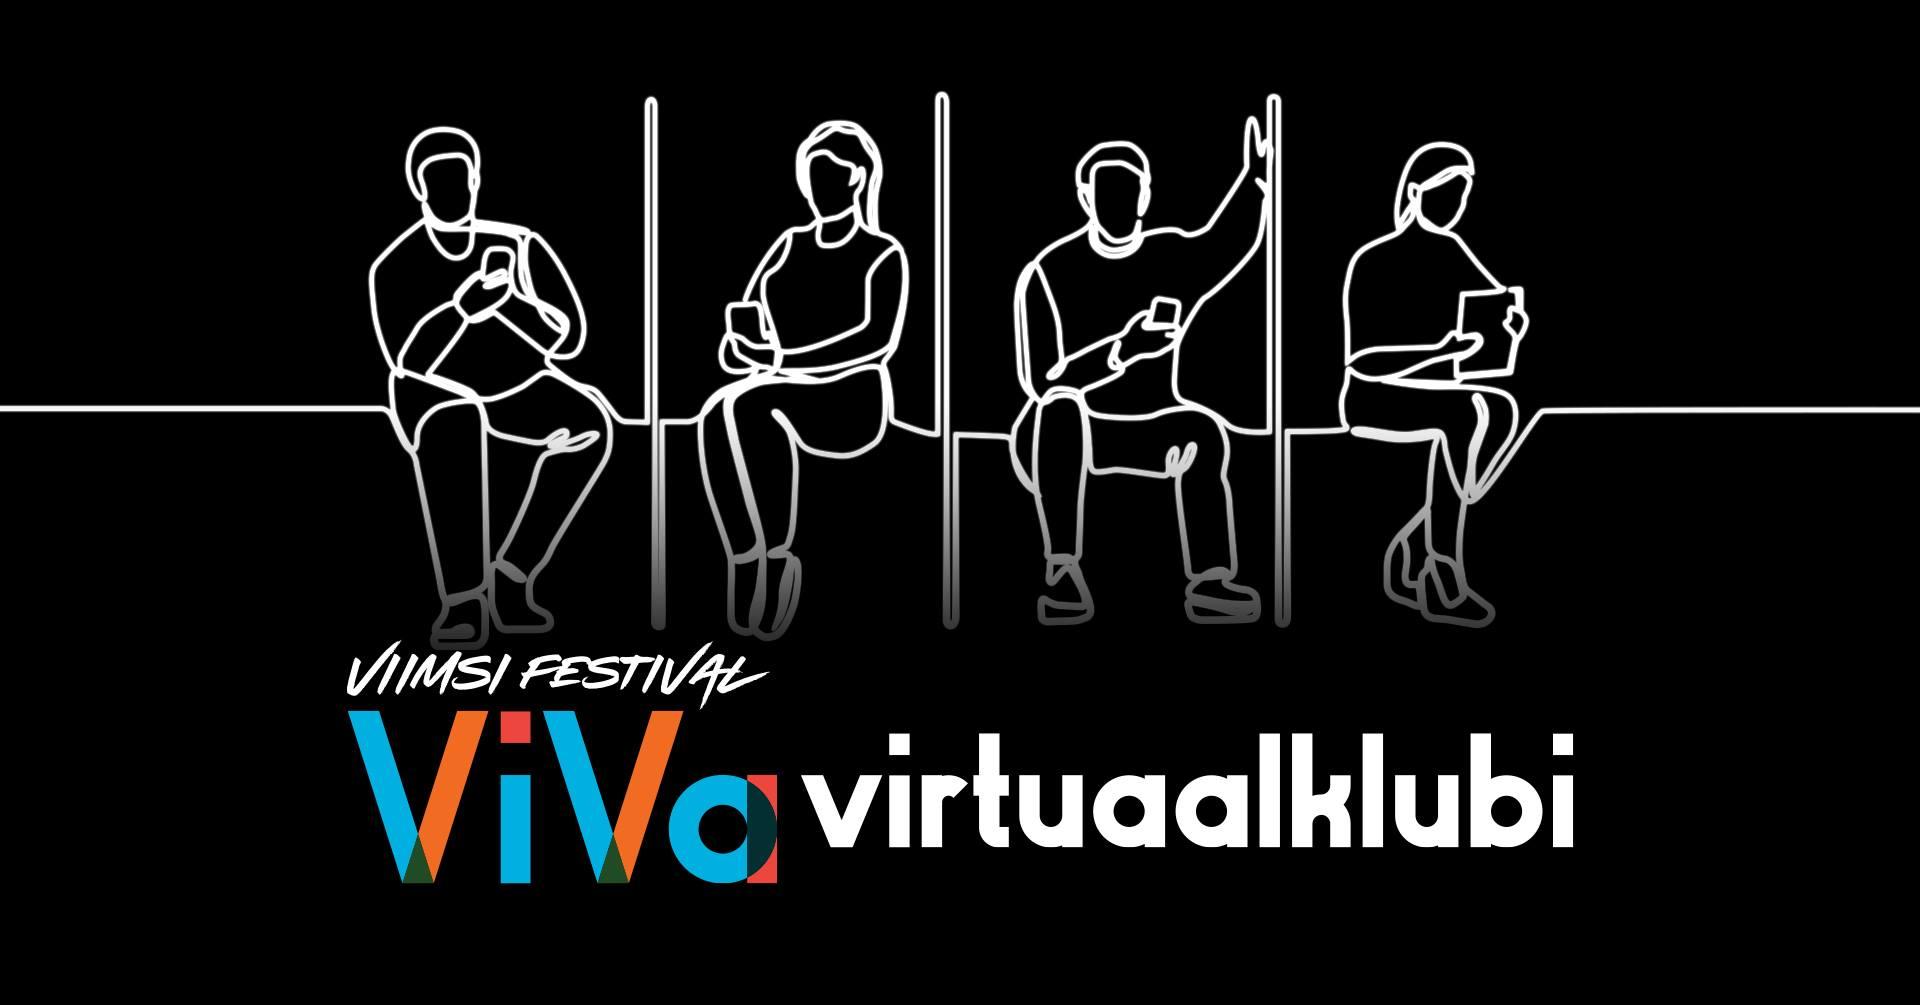 ViVa virtuaalklubi